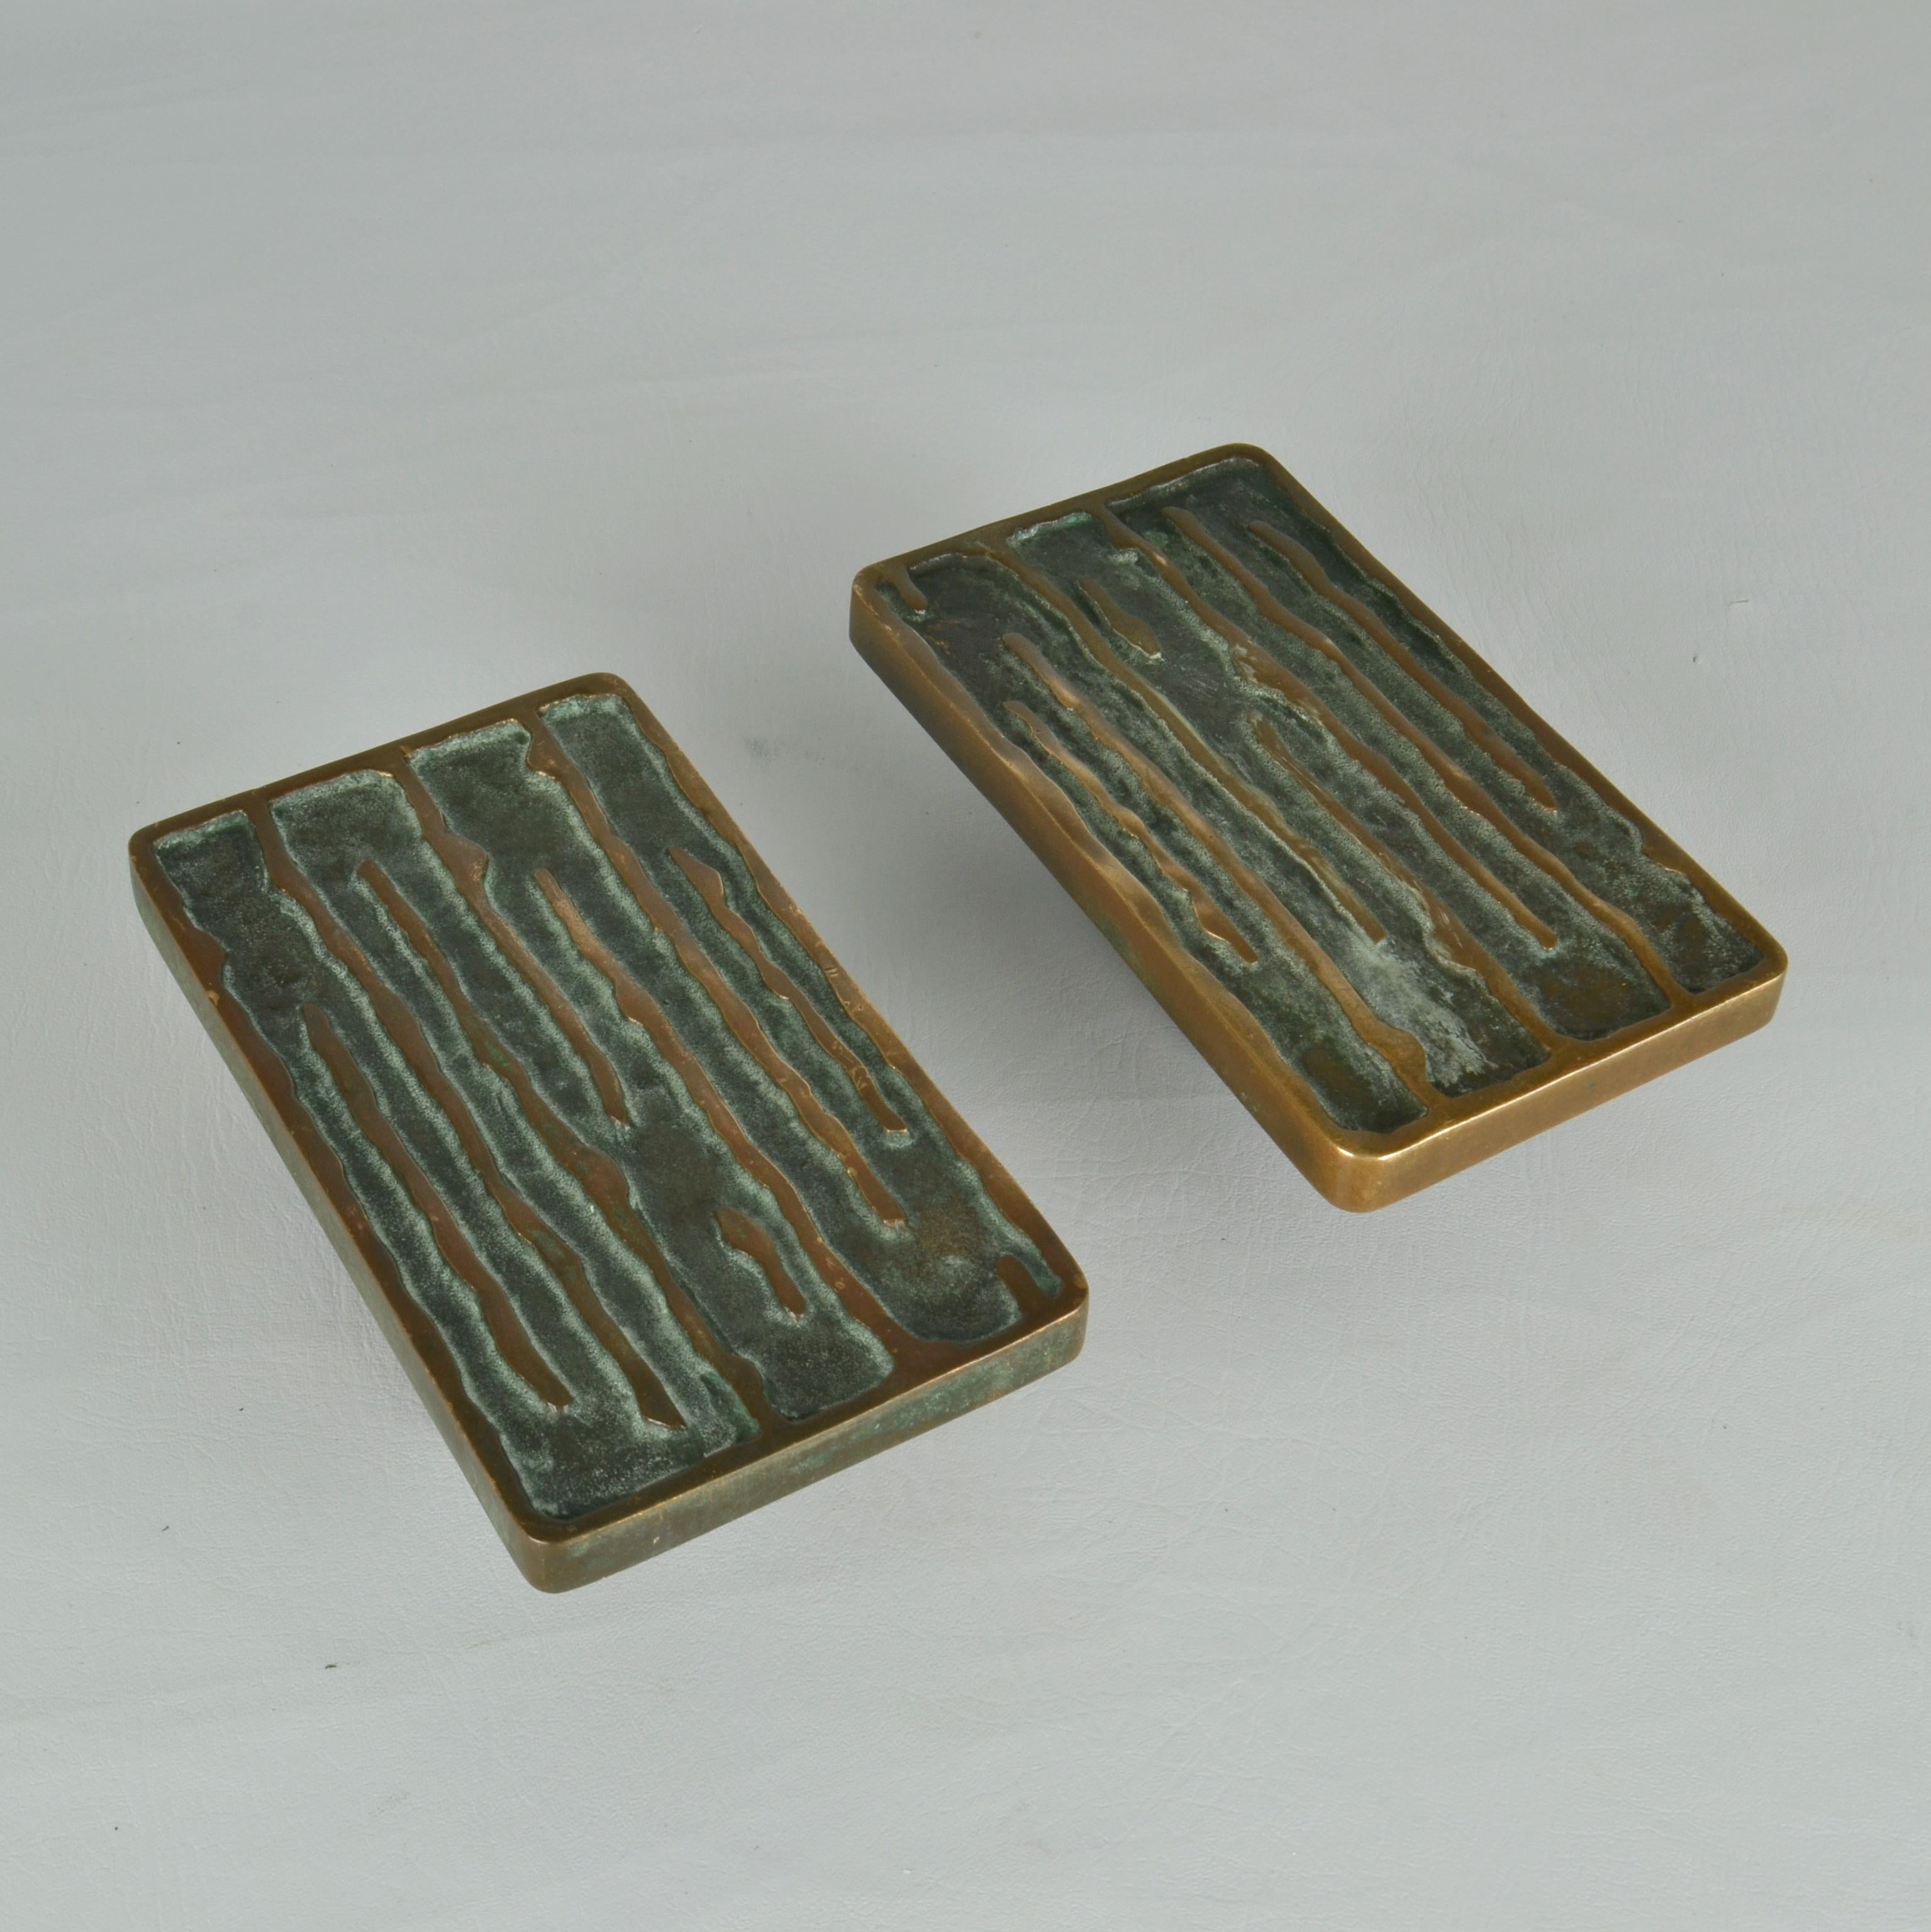 European Pair of Bronze Push Pull Door Handles with Organic Wave Relief